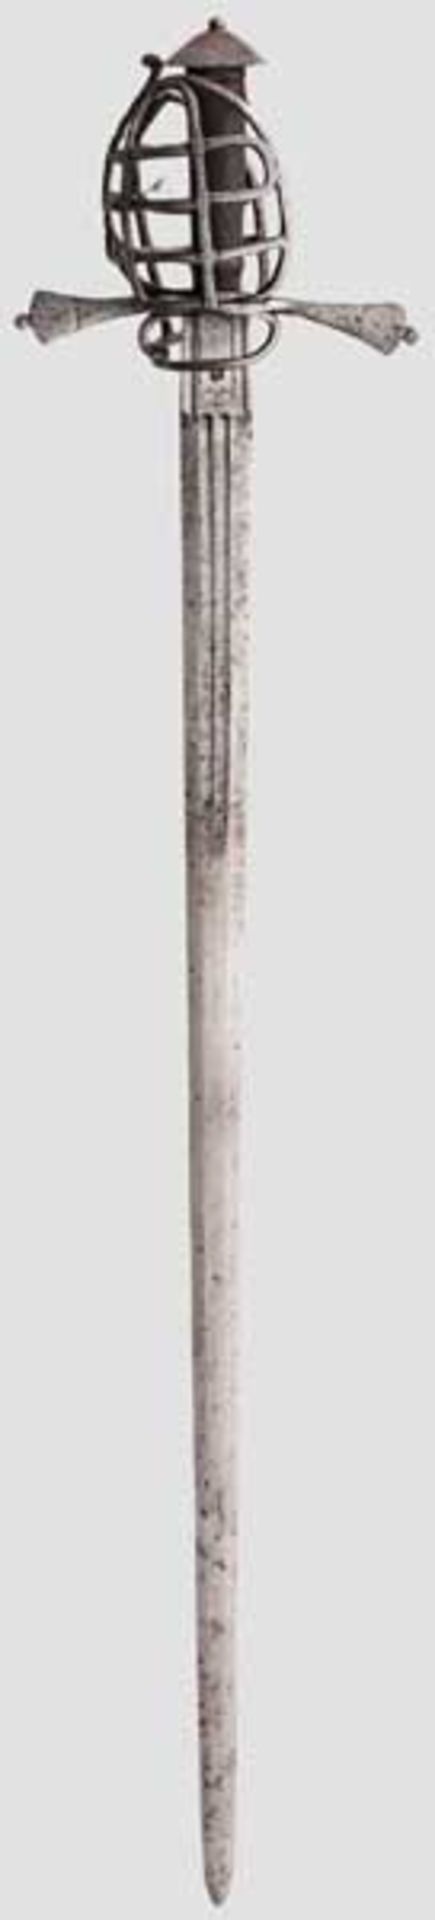 Korbschwert, steirisch um 1580 Kräftige, zweischneidige Klinge mit abgeflachtem Mittelgrat. Im